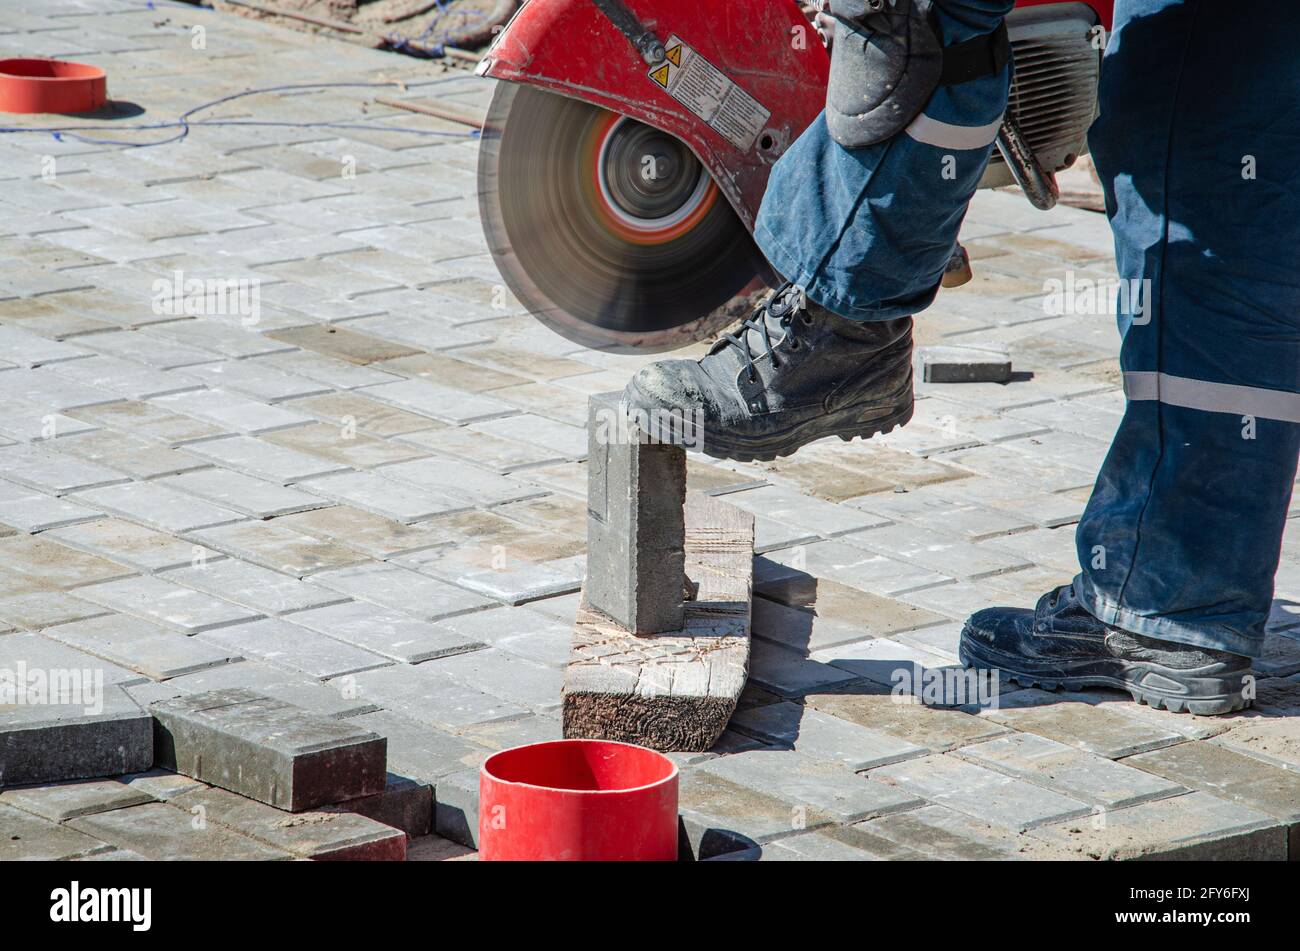 Ein Arbeiter schneidet Pflasterplatten mit einem Gasschneider und Eine Handsäge Stockfoto